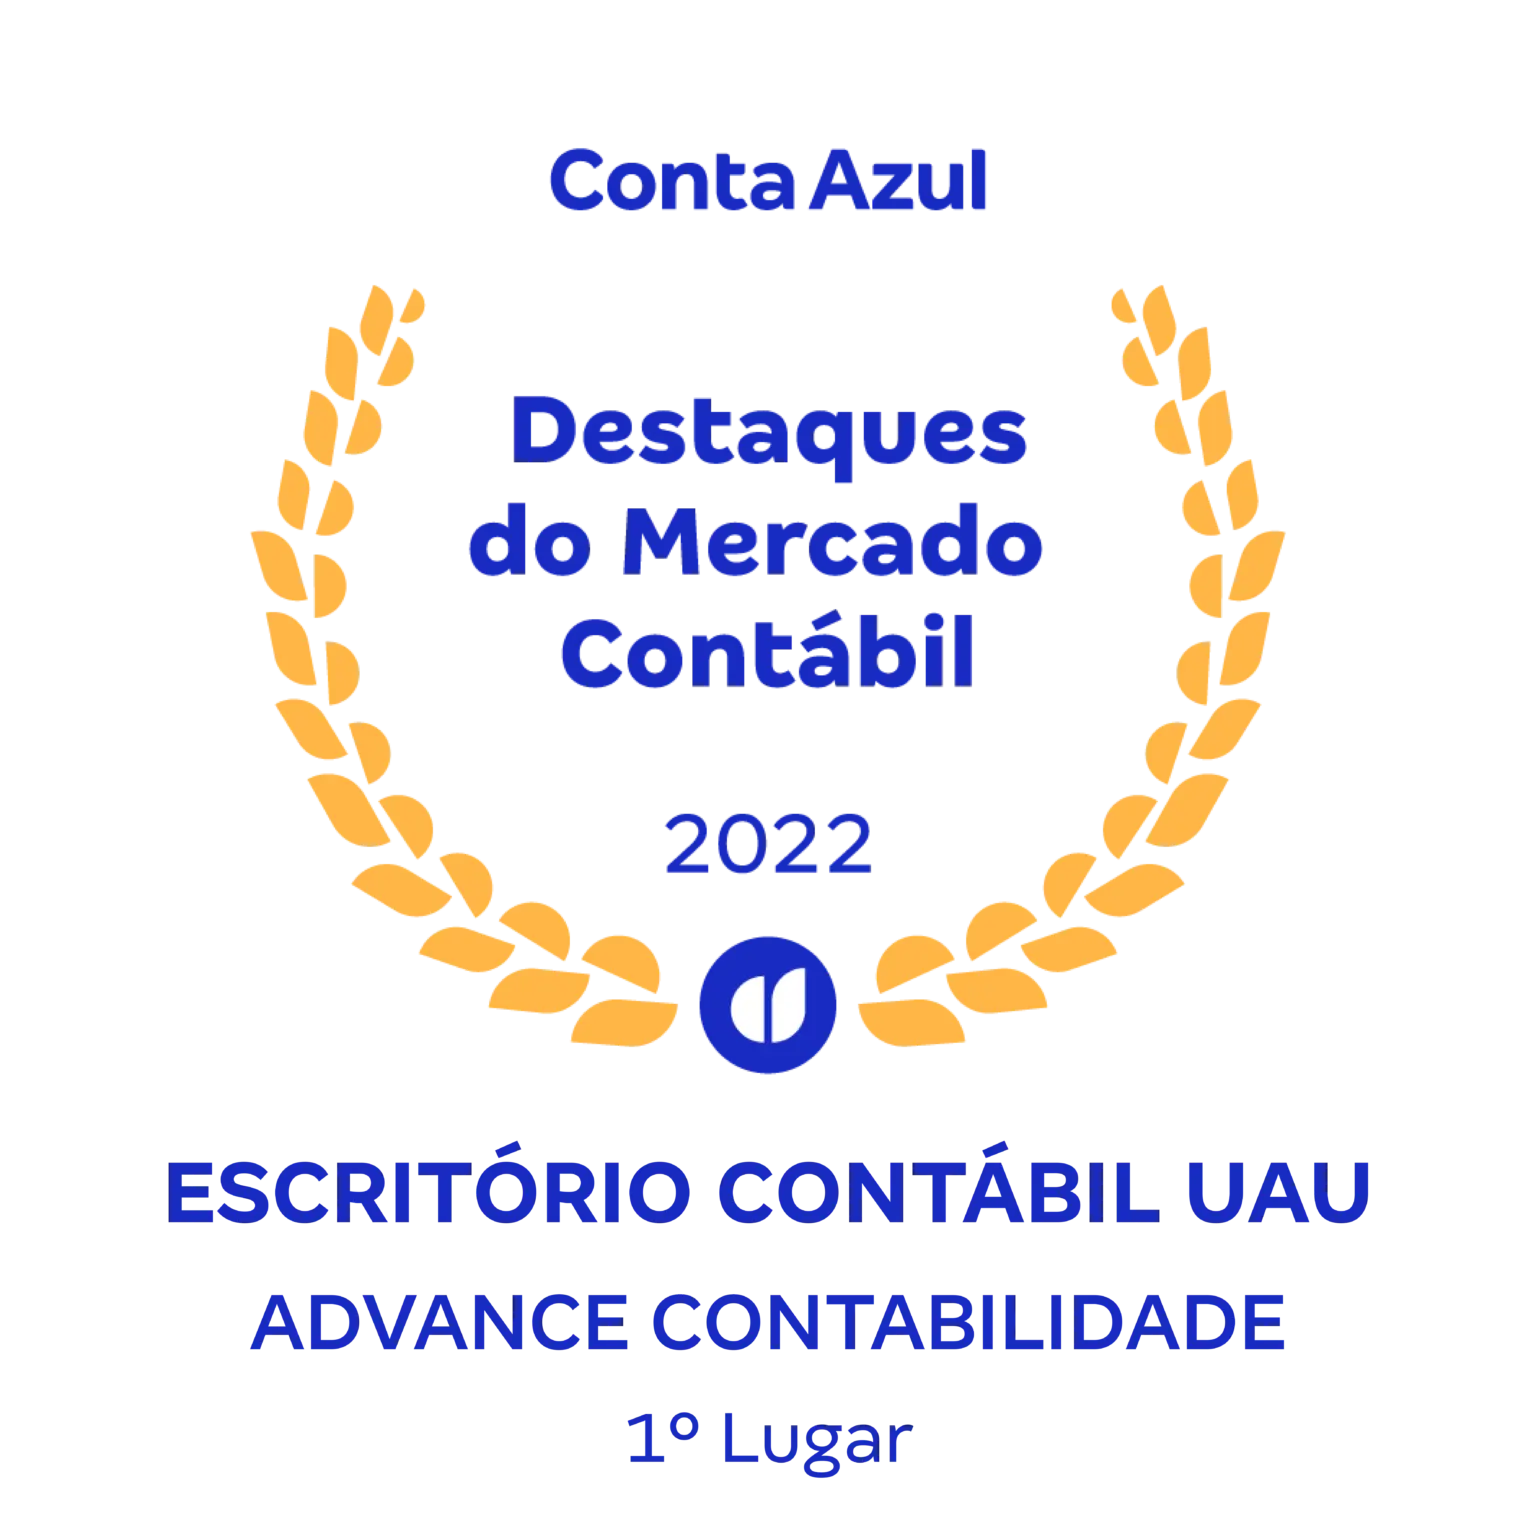 Image (23) - Contabilidade em Brasília - DF | Advance Contabilidade